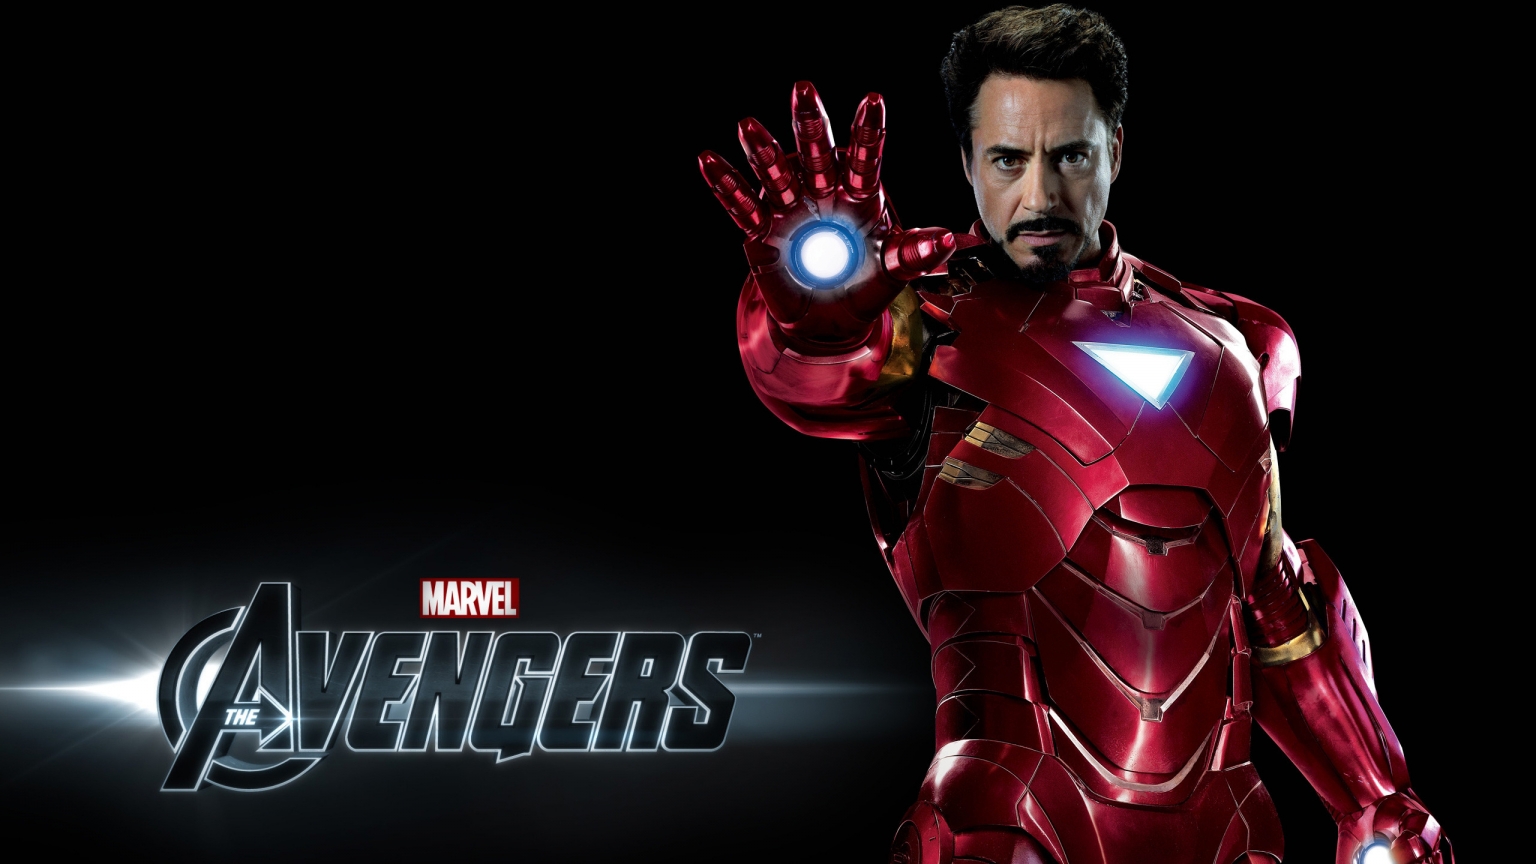 Avengers Iron Man for 1536 x 864 HDTV resolution